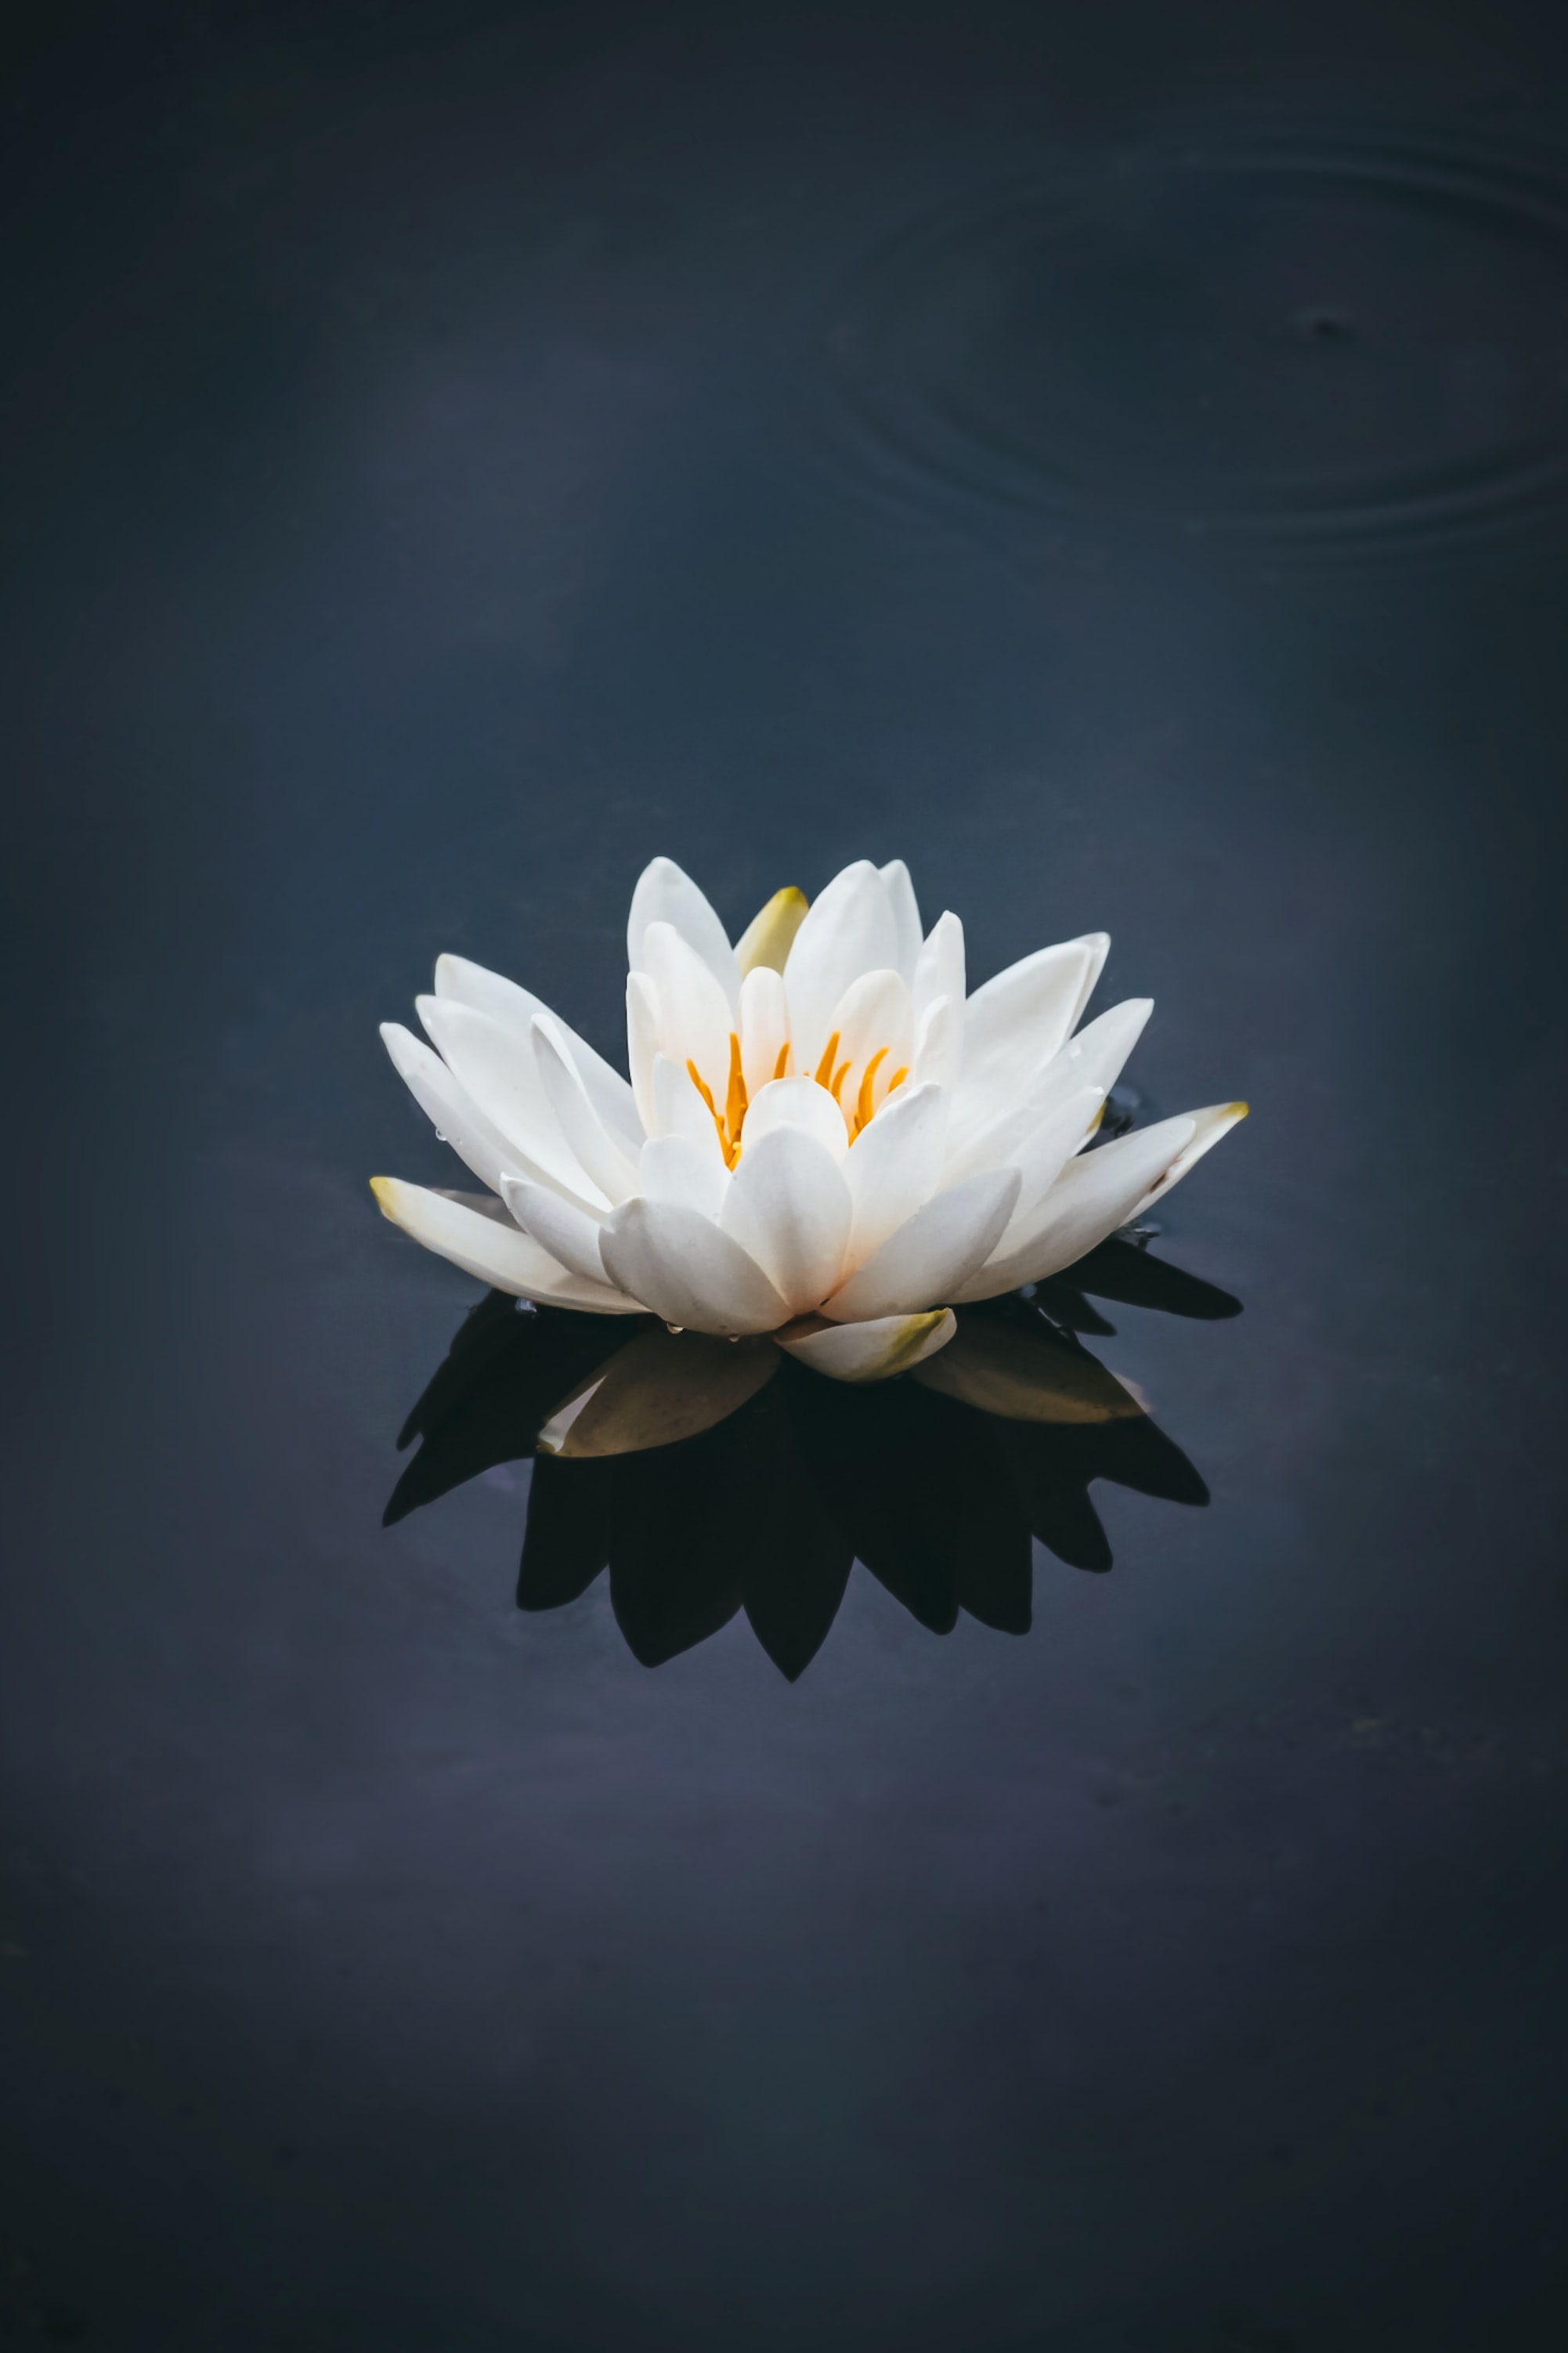 Lotus symbol in fashion